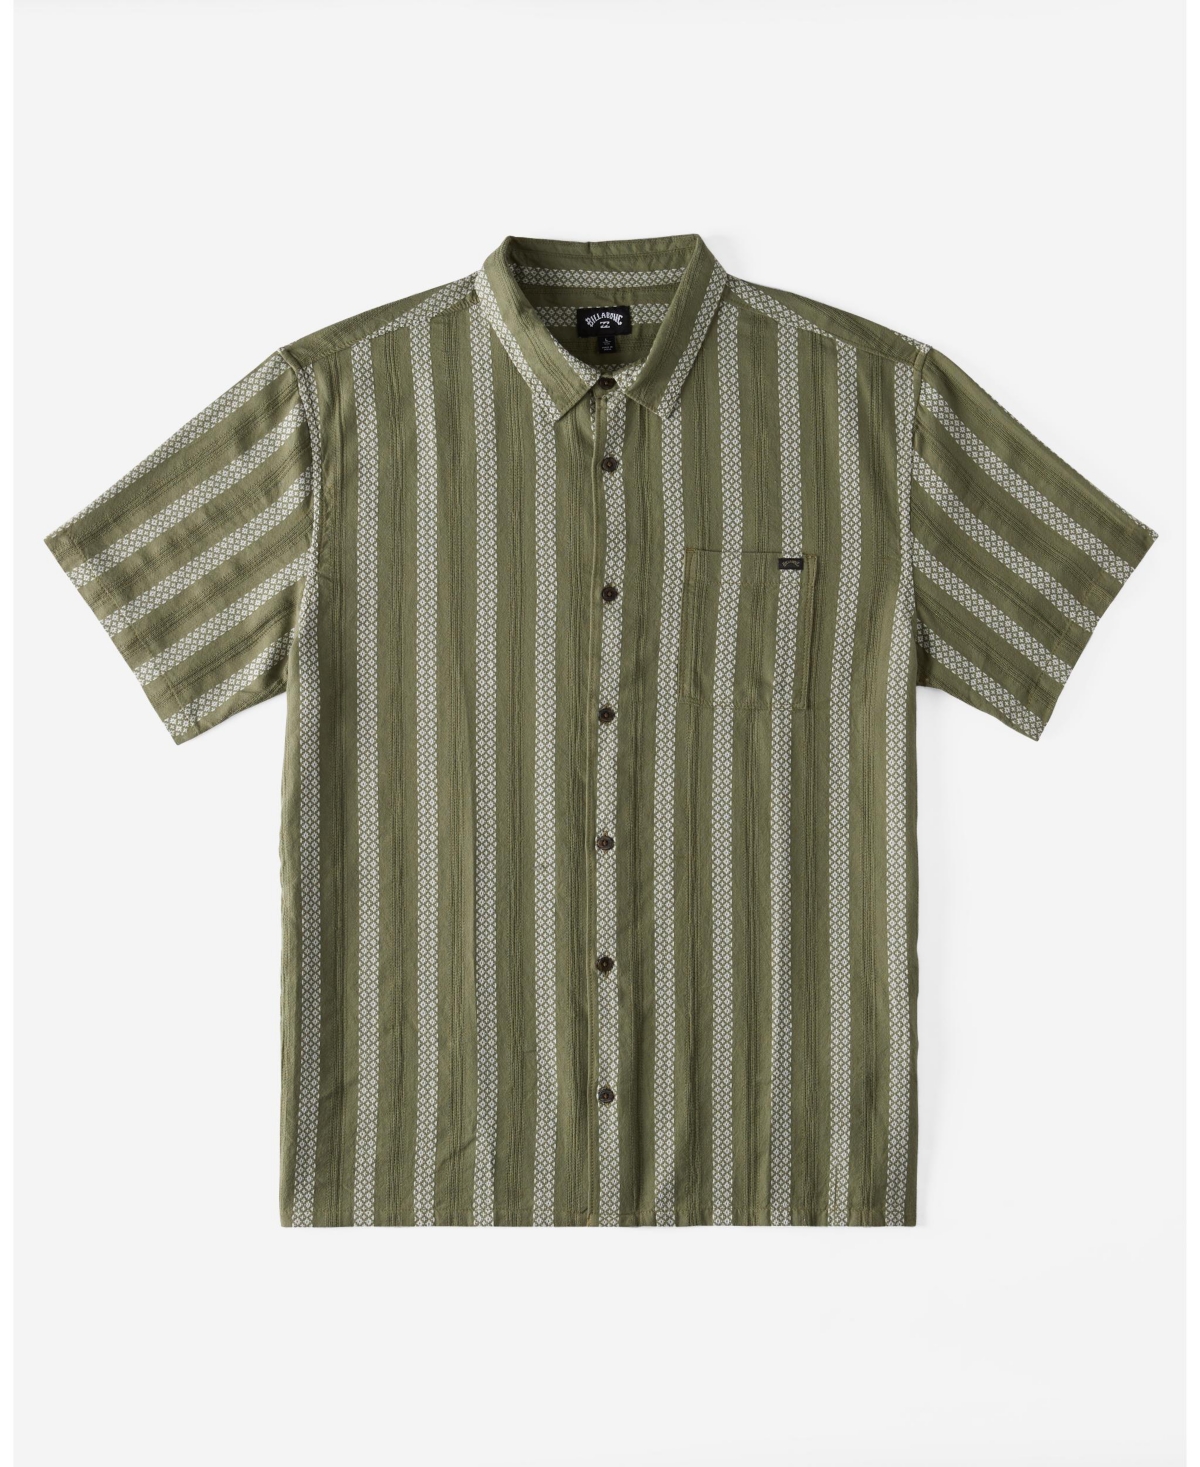 Men's Sundays Jacquard Short Sleeves Shirt - Dark Olive